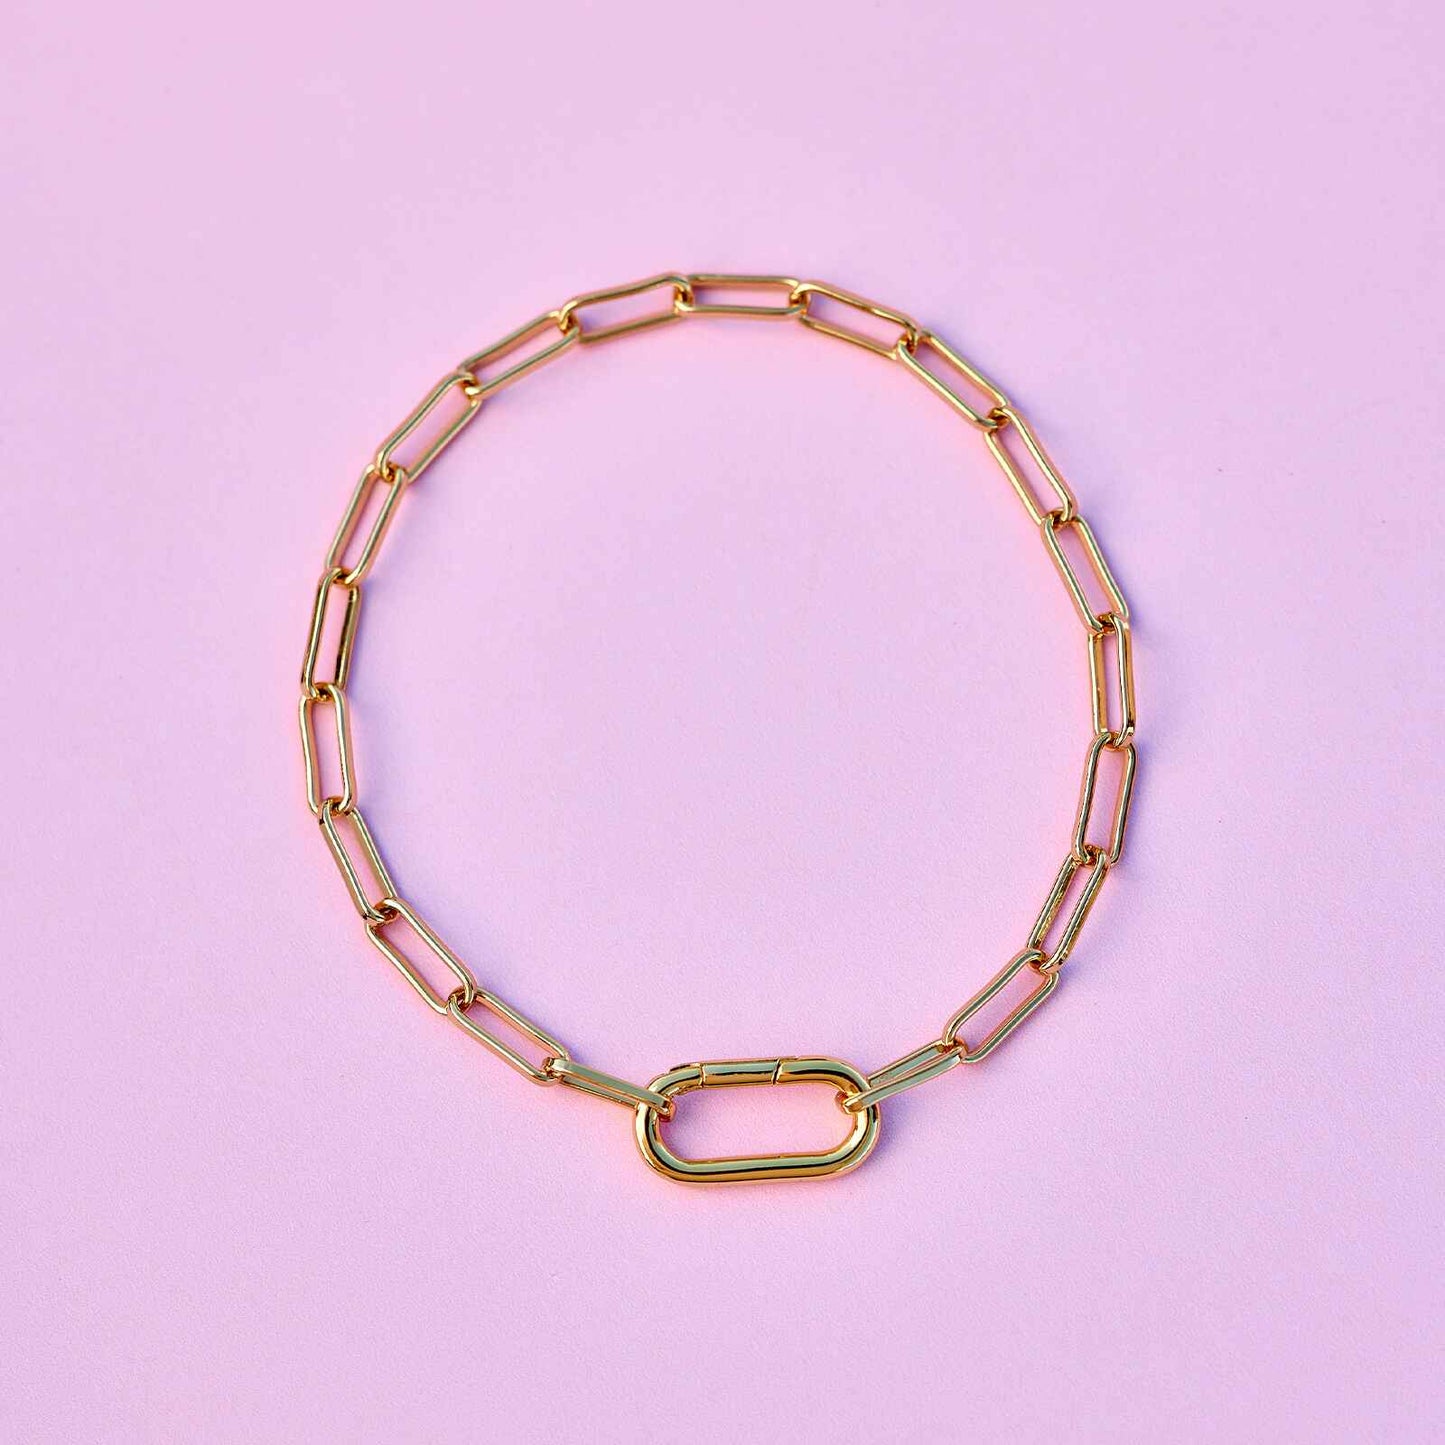 Harper Oval Charm Chain Bracelet